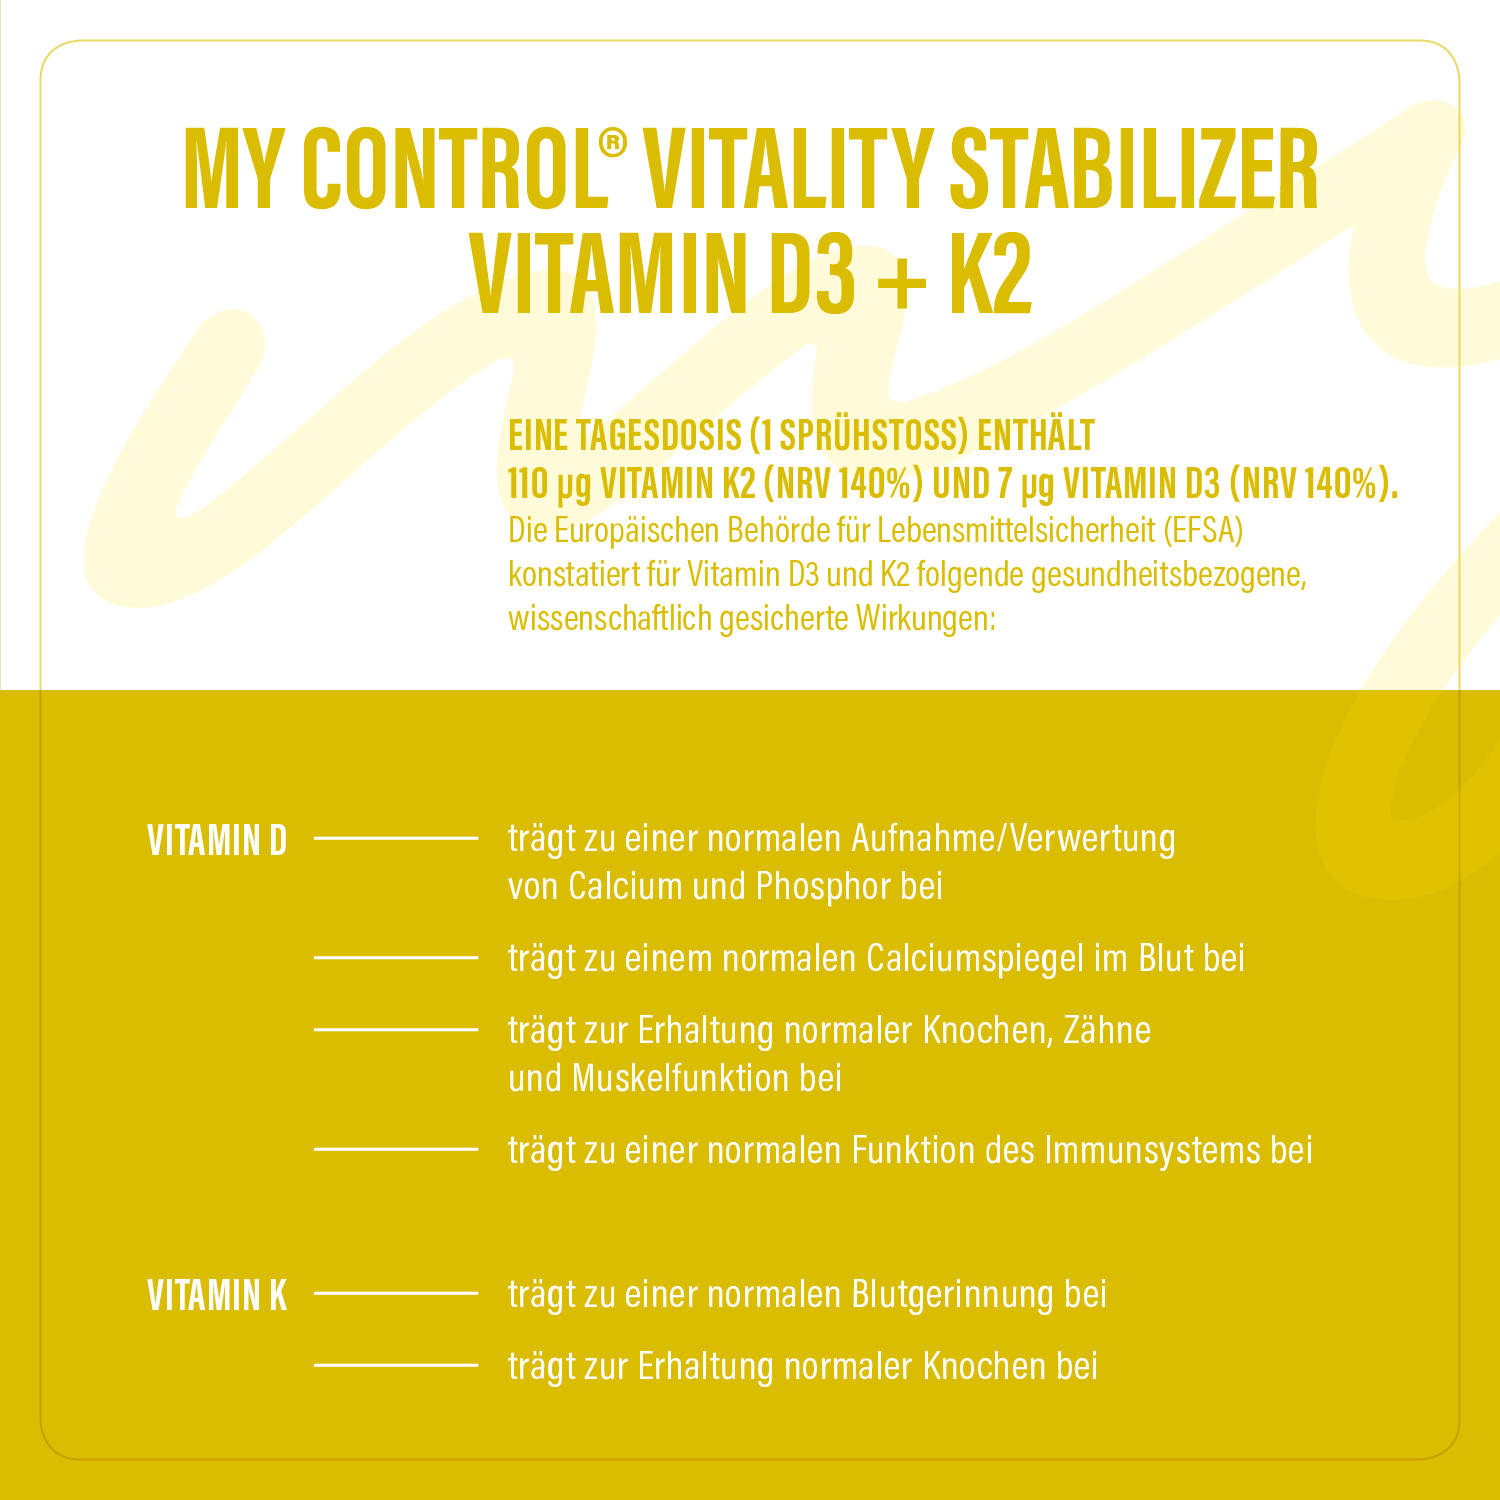 Stabilizer – Vitamin D3+K2 Tagesdosis und Health Claims